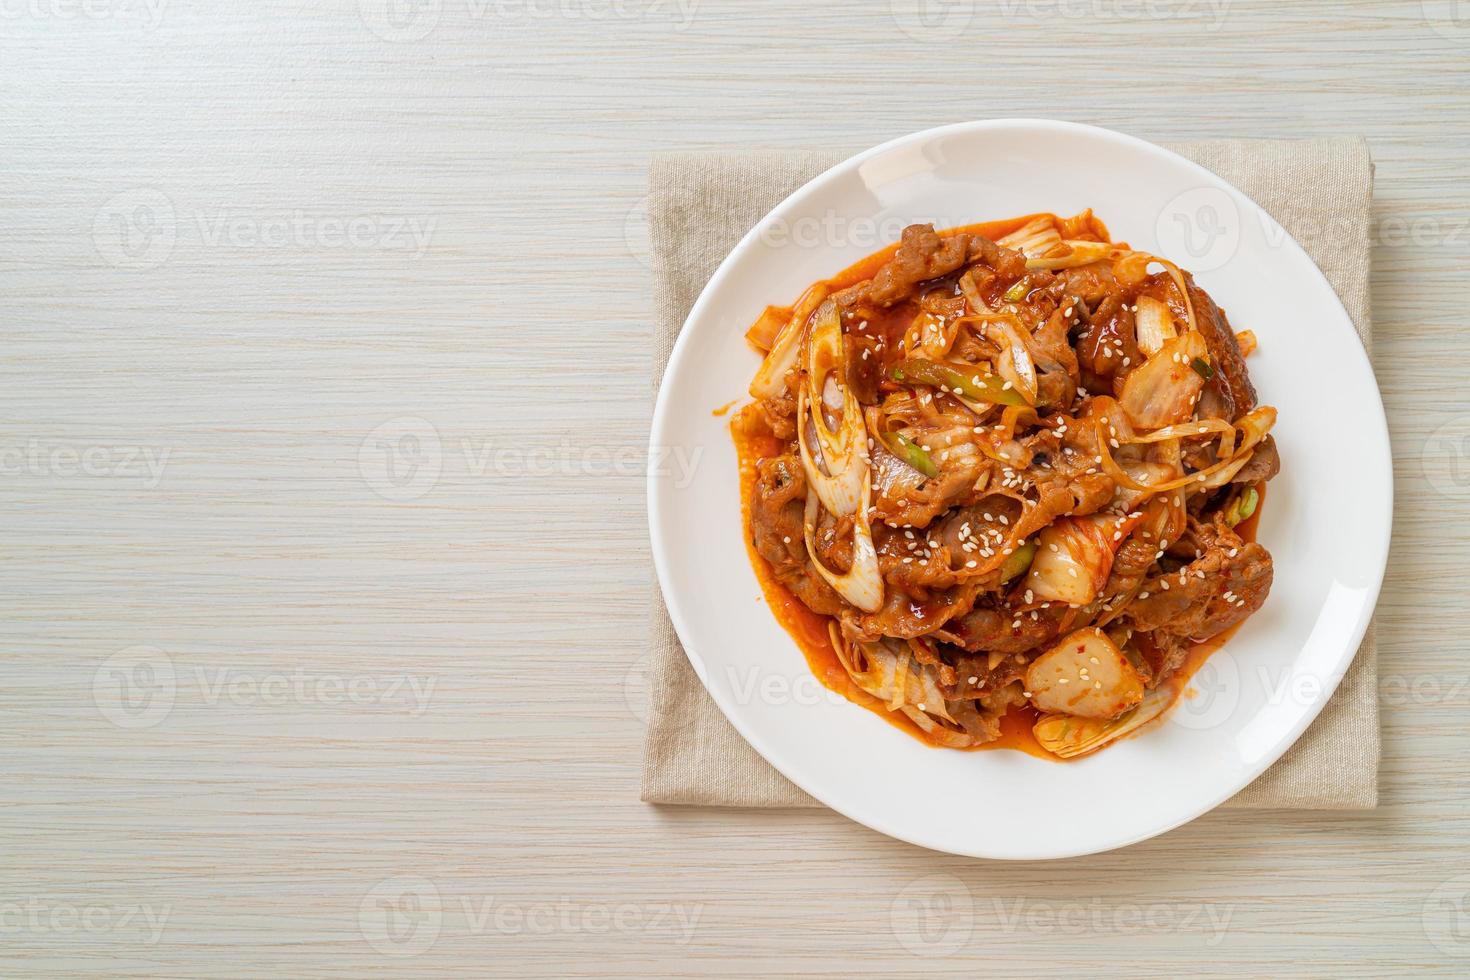 uppstekt fläsk med koreansk kryddig pasta och kimchi - koreansk matstil foto